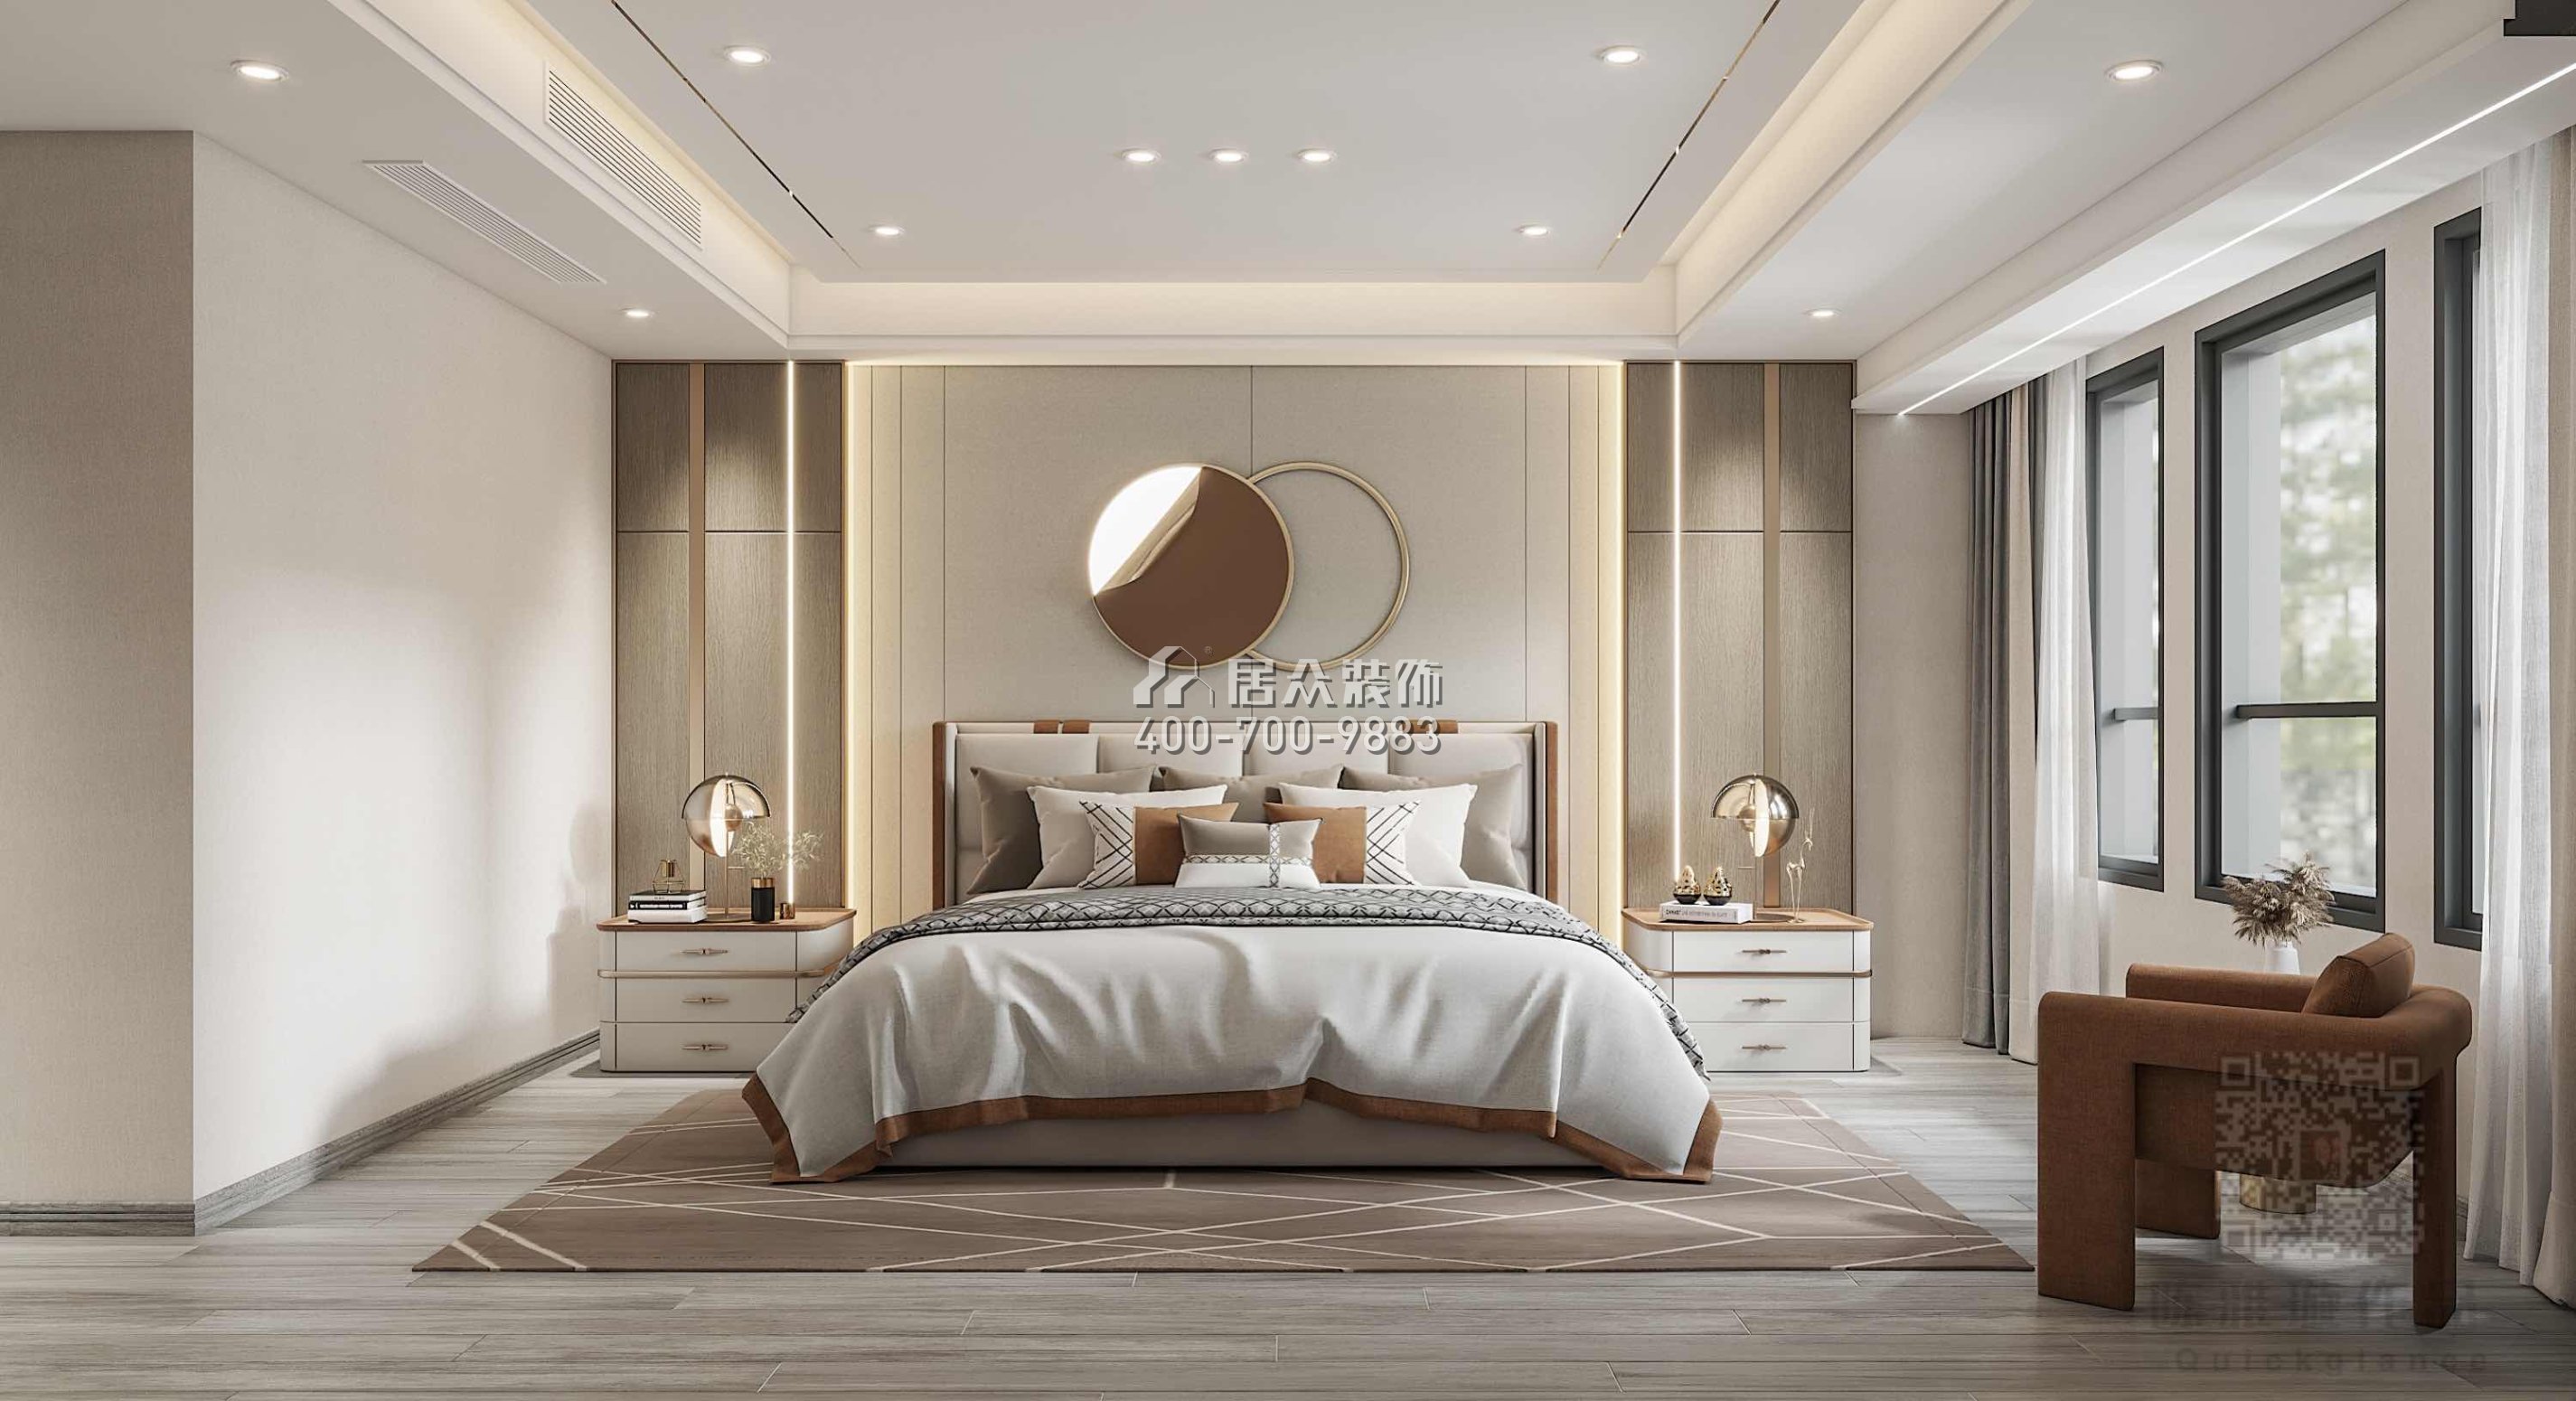 海伦堡爱ME城市250平方米现代简约风格复式户型卧室装修效果图